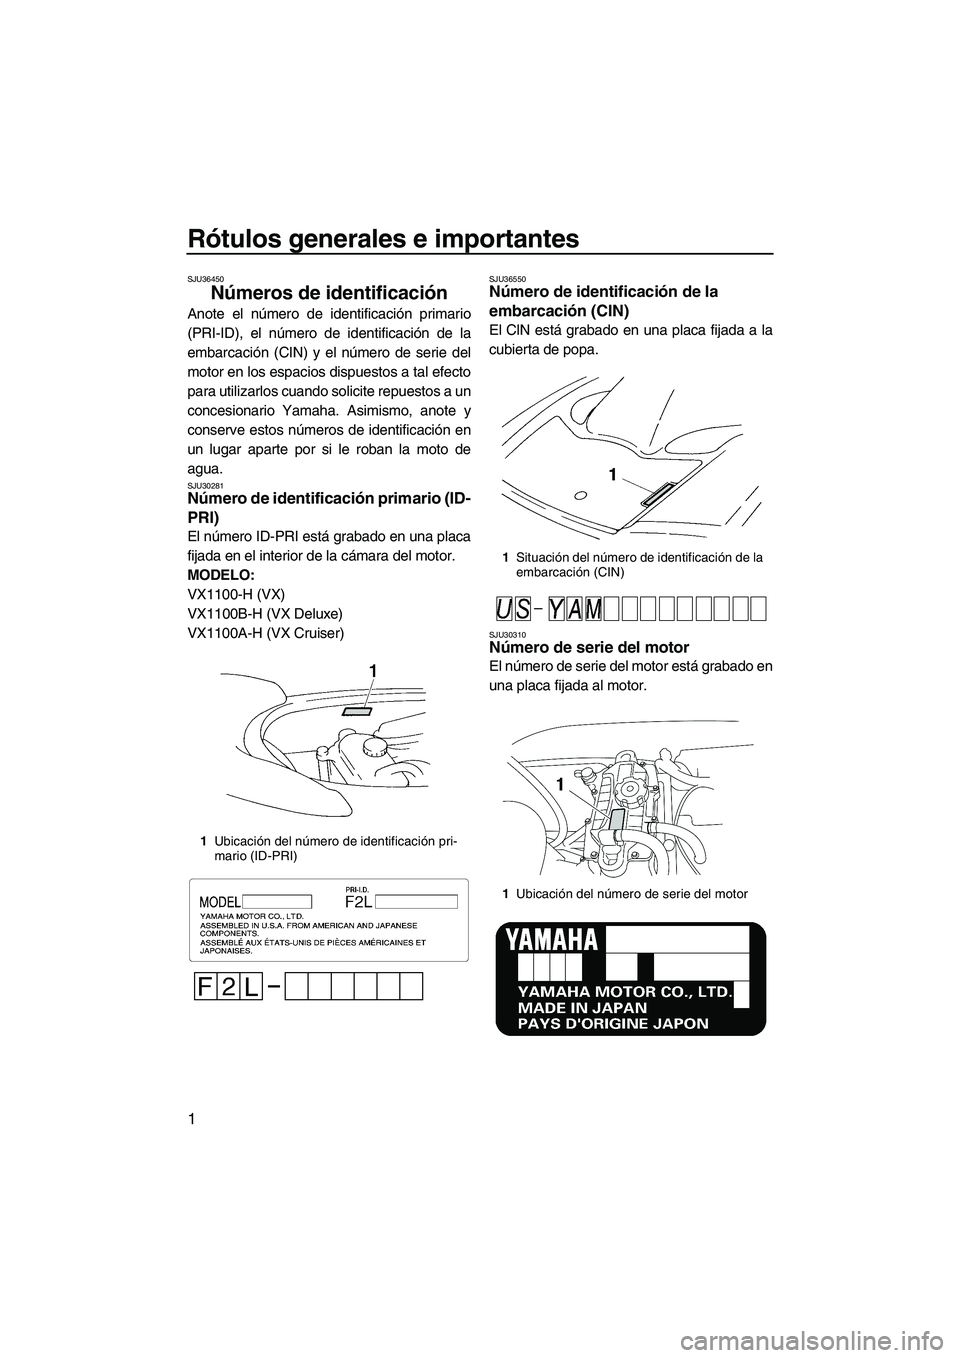 YAMAHA VX SPORT 2009  Manuale de Empleo (in Spanish) Rótulos generales e importantes
1
SJU36450
Números de identificación 
Anote el número de identificación primario
(PRI-ID), el número de identificación de la
embarcación (CIN) y el número de s